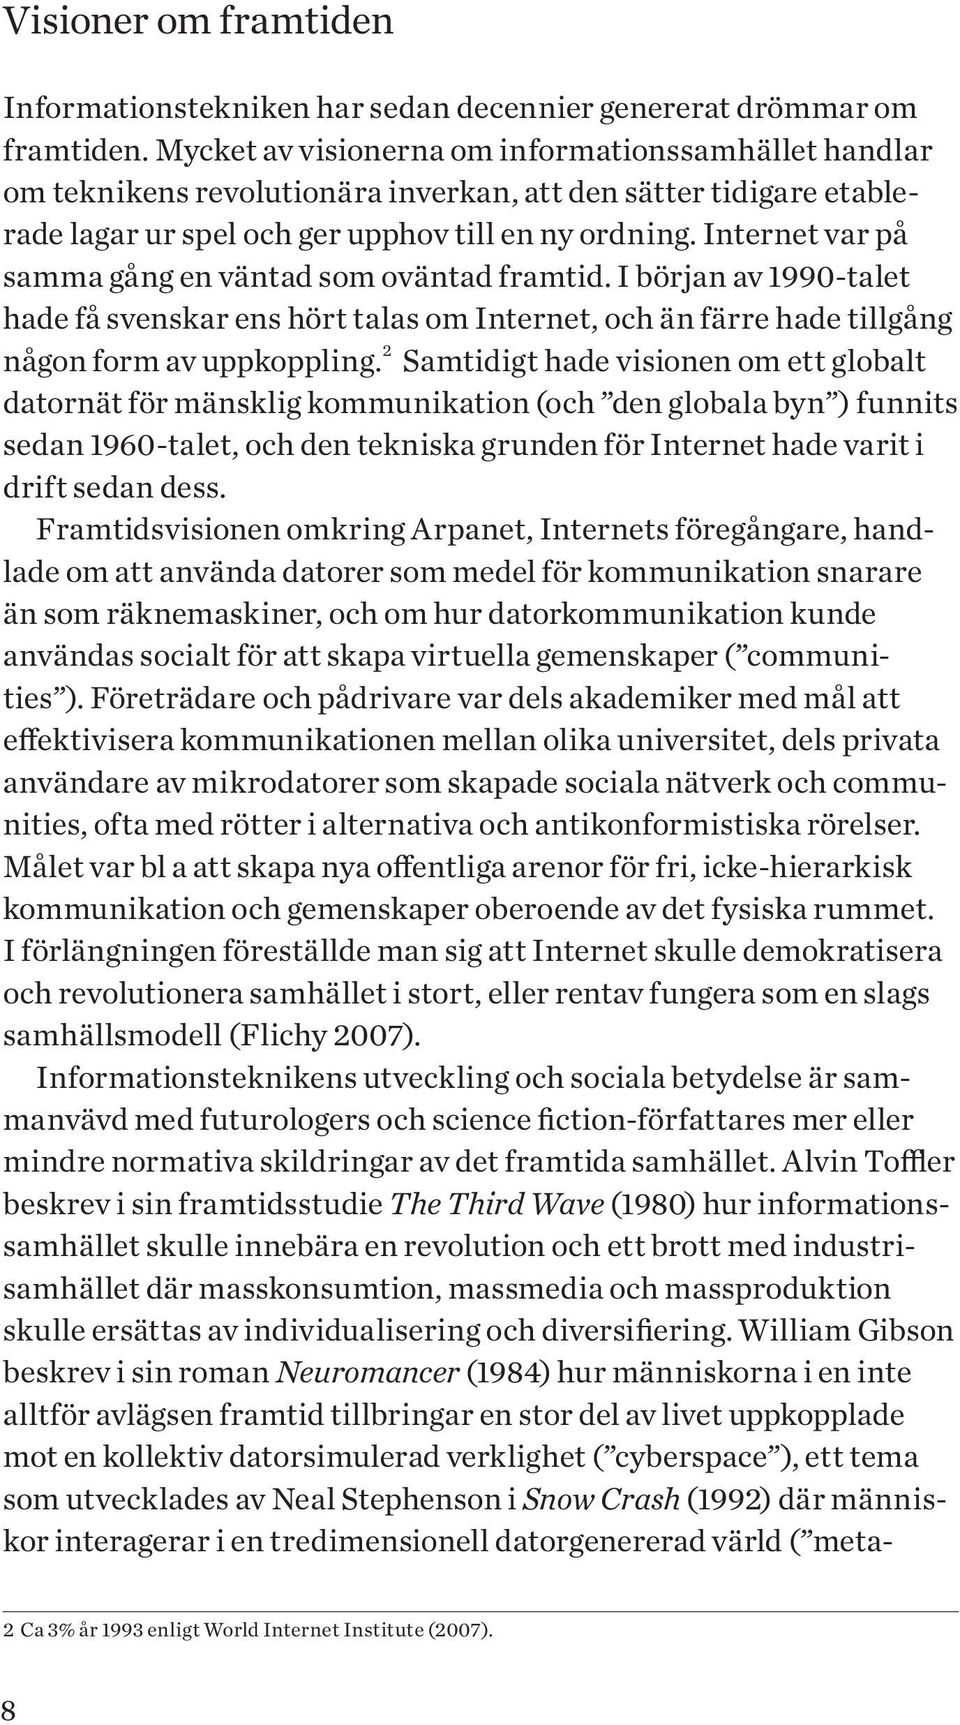 Internet var på samma gång en väntad som oväntad framtid. I början av 1990-talet hade få svenskar ens hört talas om Internet, och än färre hade tillgång någon form av uppkoppling.